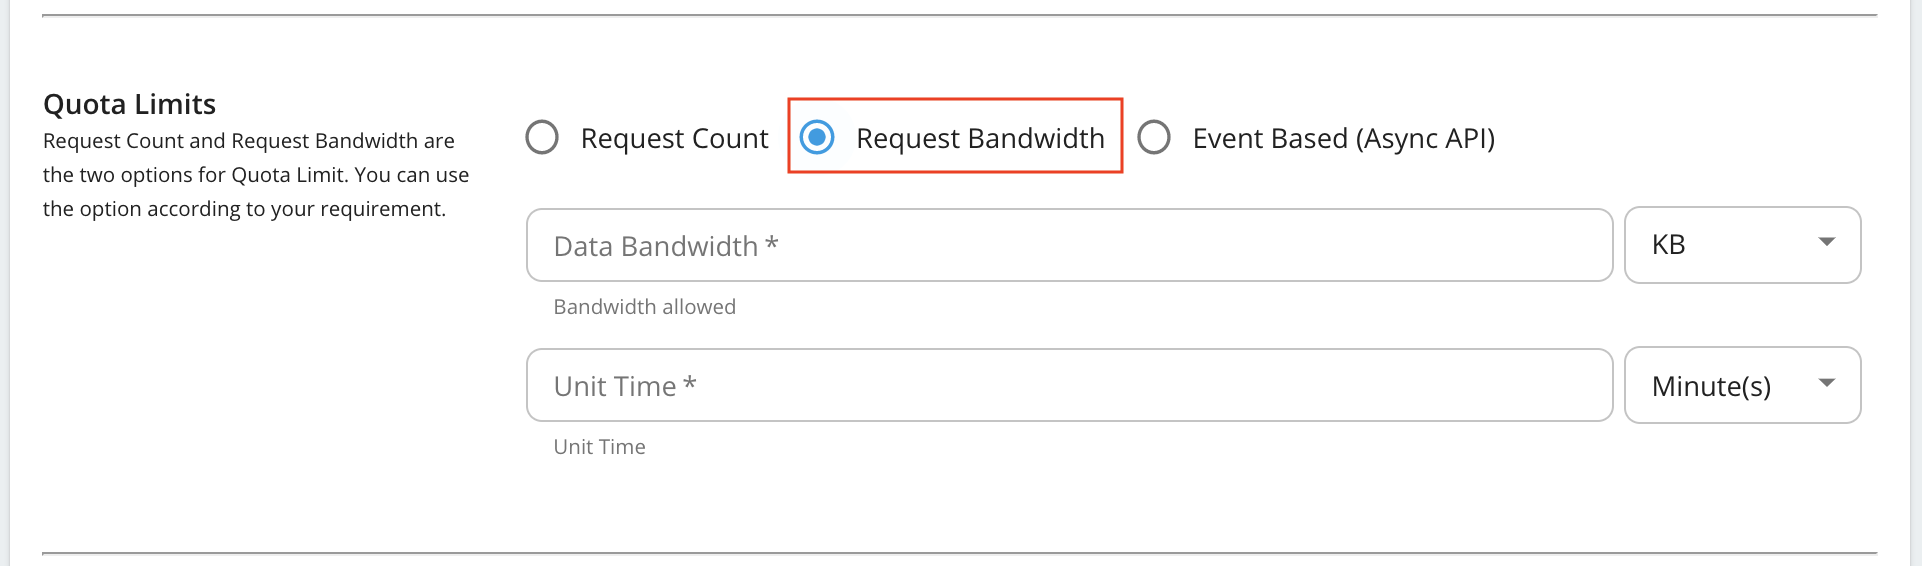 Request bandwidth based quota limits